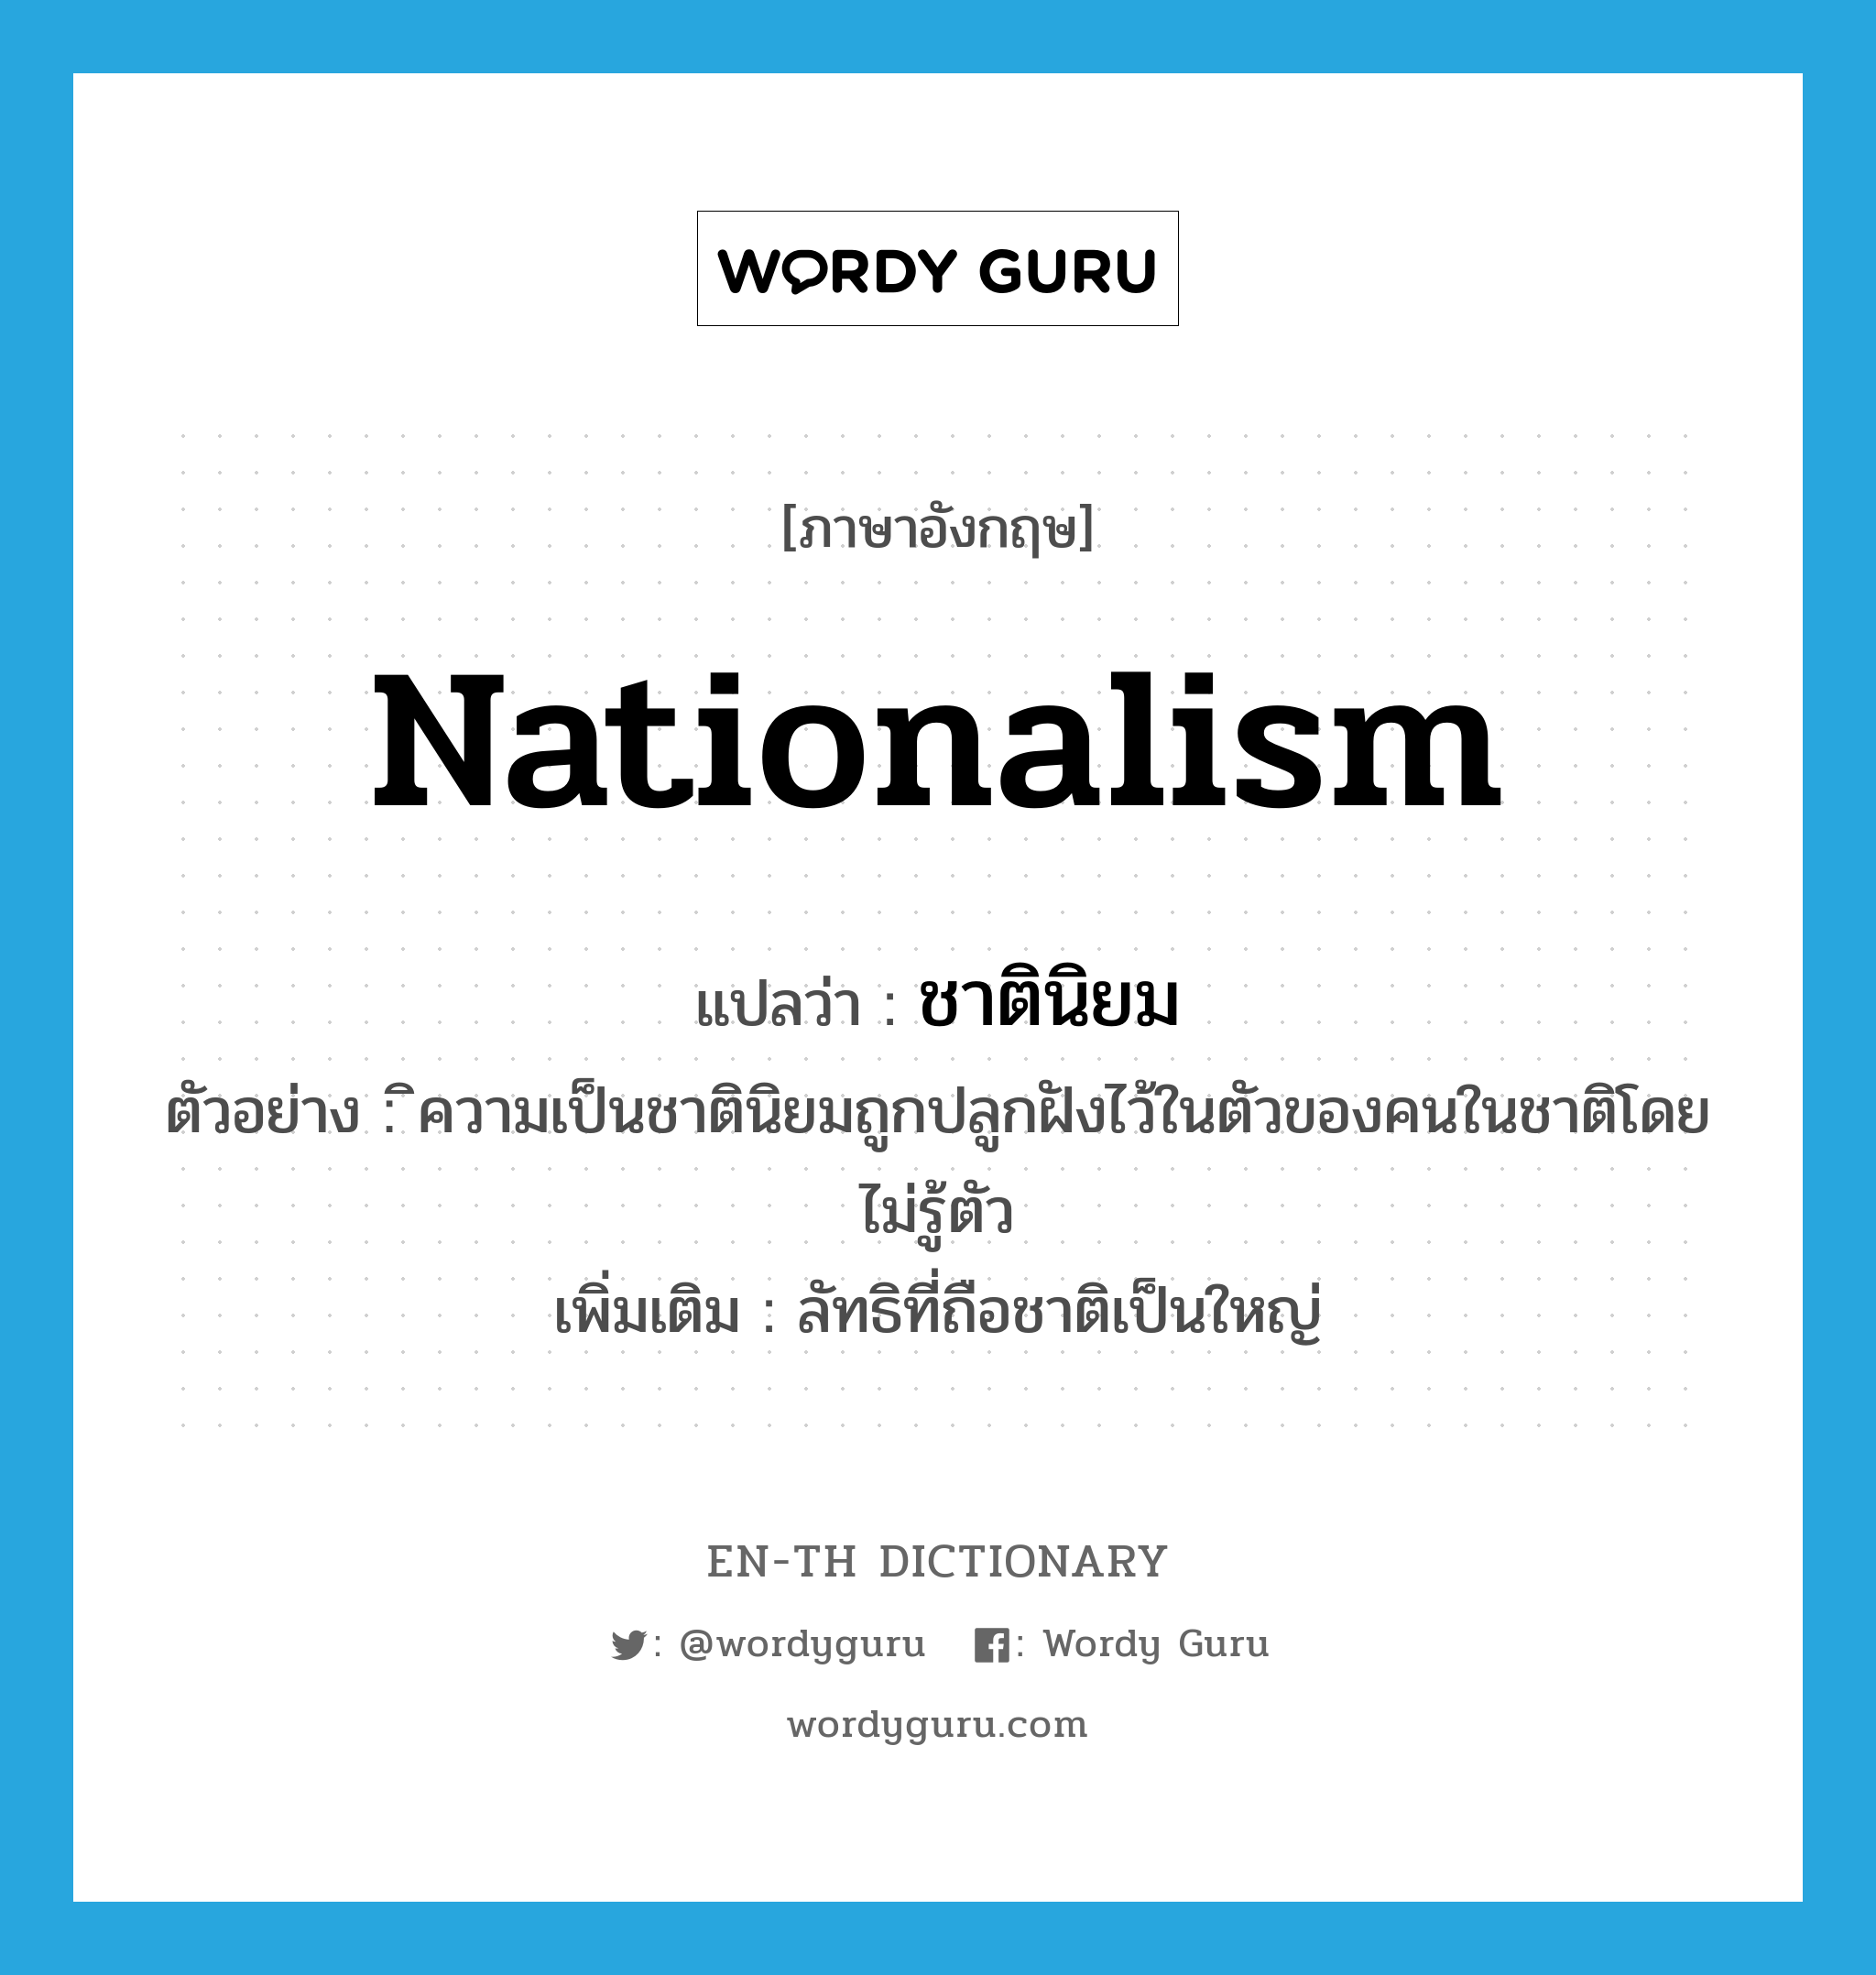 ชาตินิยม ภาษาอังกฤษ?, คำศัพท์ภาษาอังกฤษ ชาตินิยม แปลว่า nationalism ประเภท N ตัวอย่าง ิความเป็นชาตินิยมถูกปลูกฝังไว้ในตัวของคนในชาติโดยไม่รู้ตัว เพิ่มเติม ลัทธิที่ถือชาติเป็นใหญ่ หมวด N